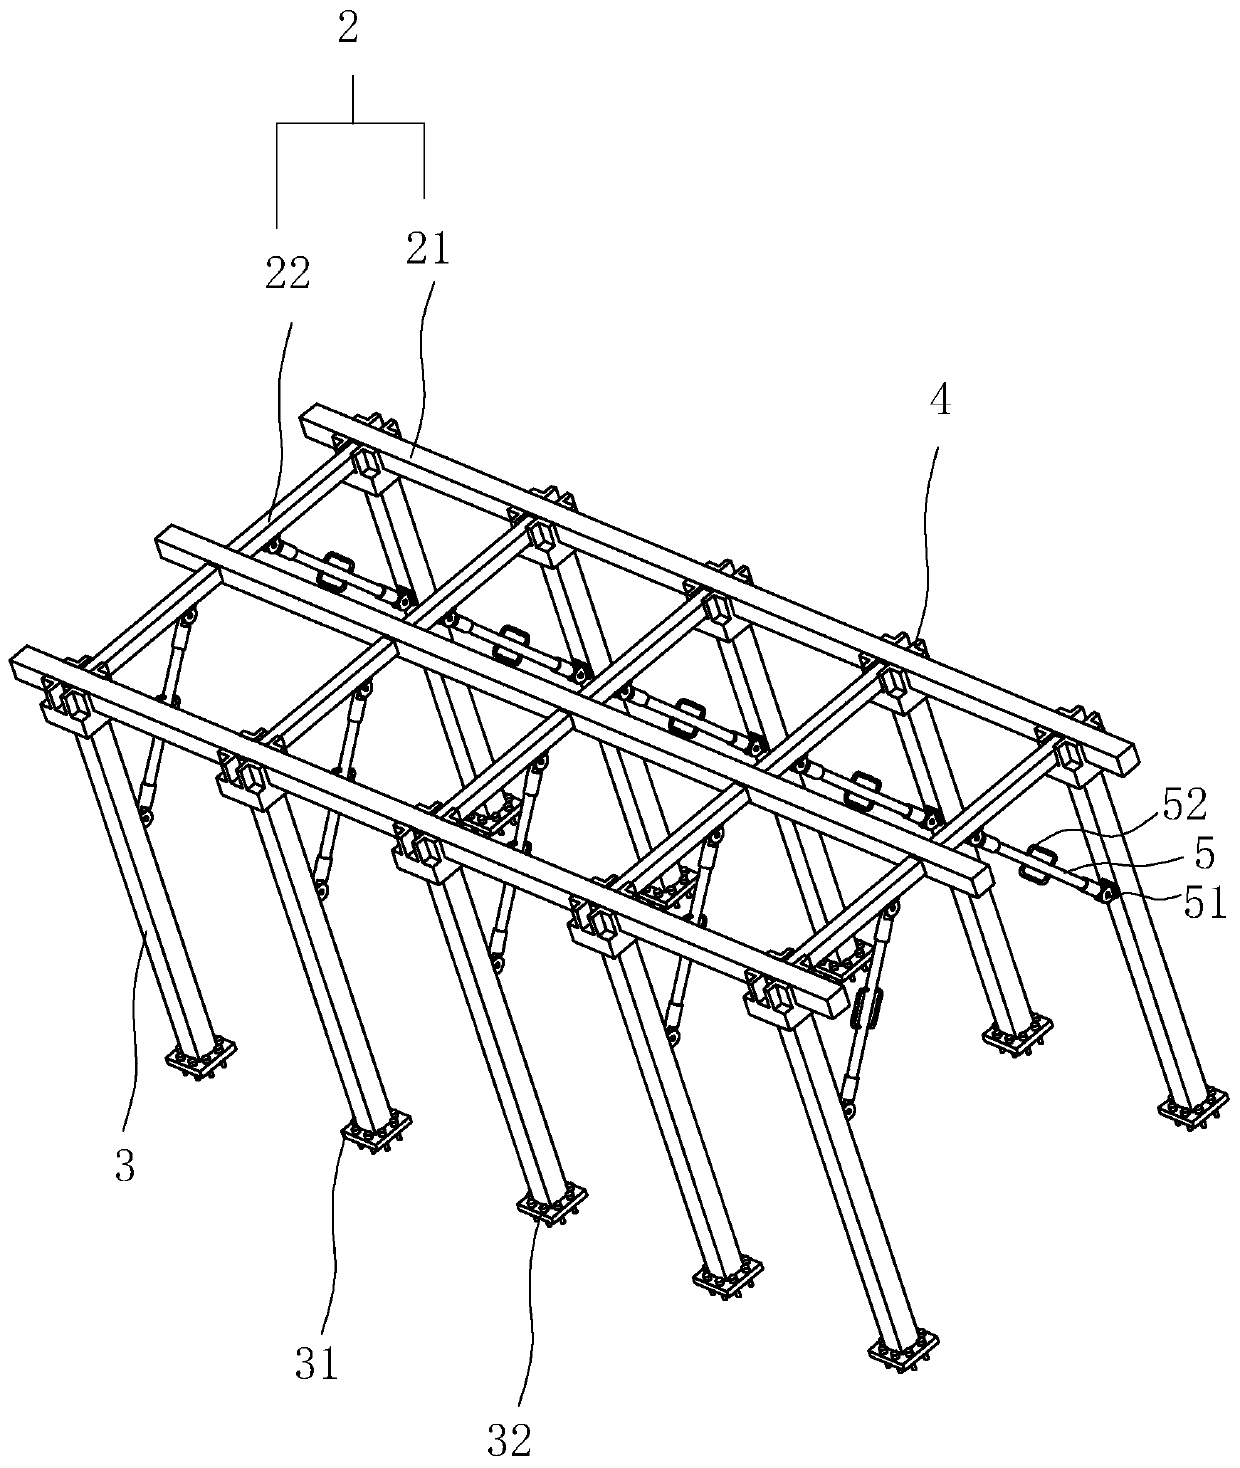 Underframe of steel bridge frame